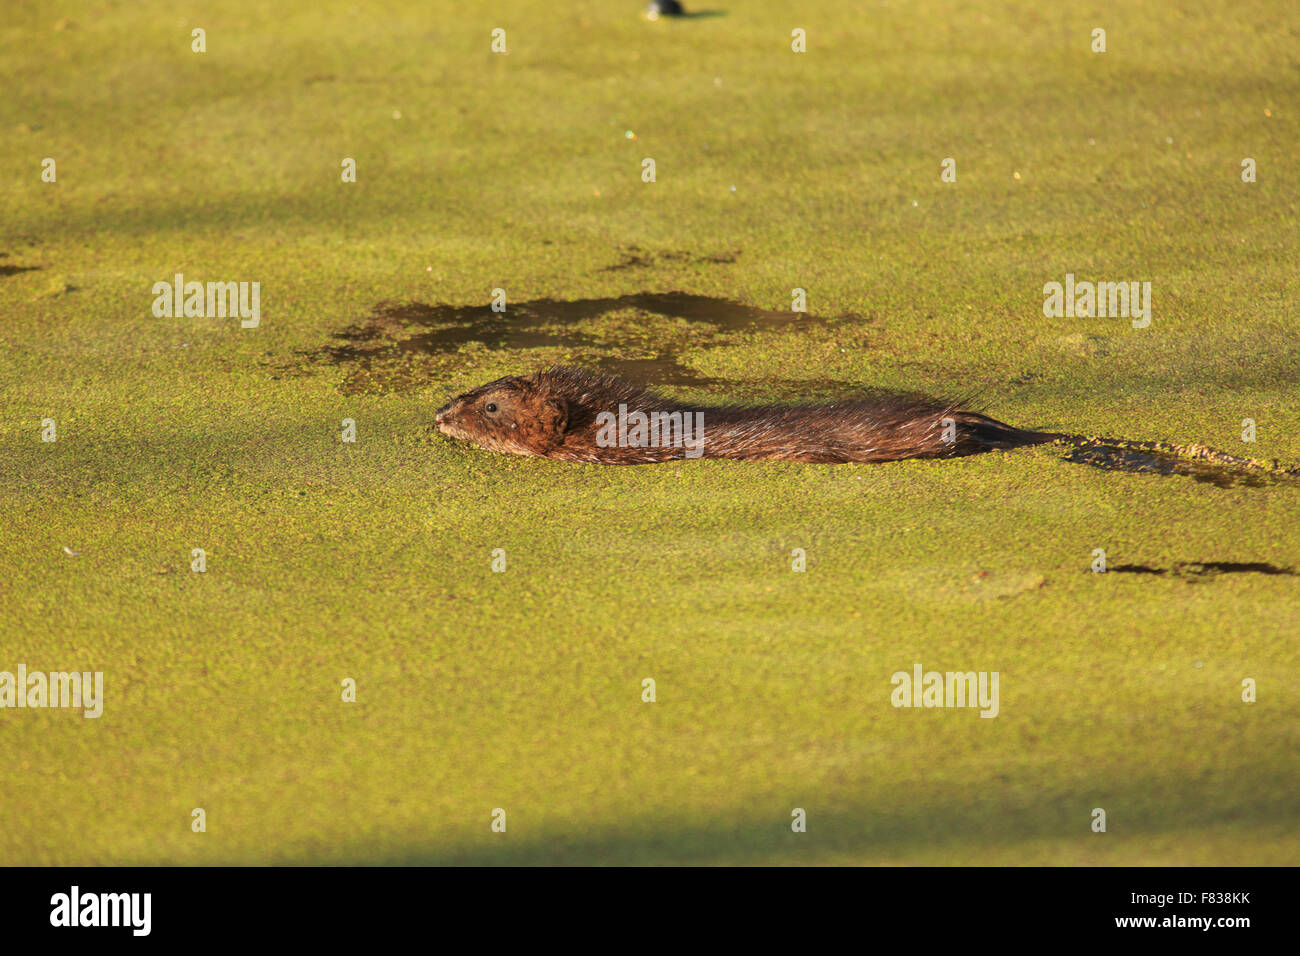 Muskrat (Ondatra zibethicus) swimming in duckweed filled water Stock Photo